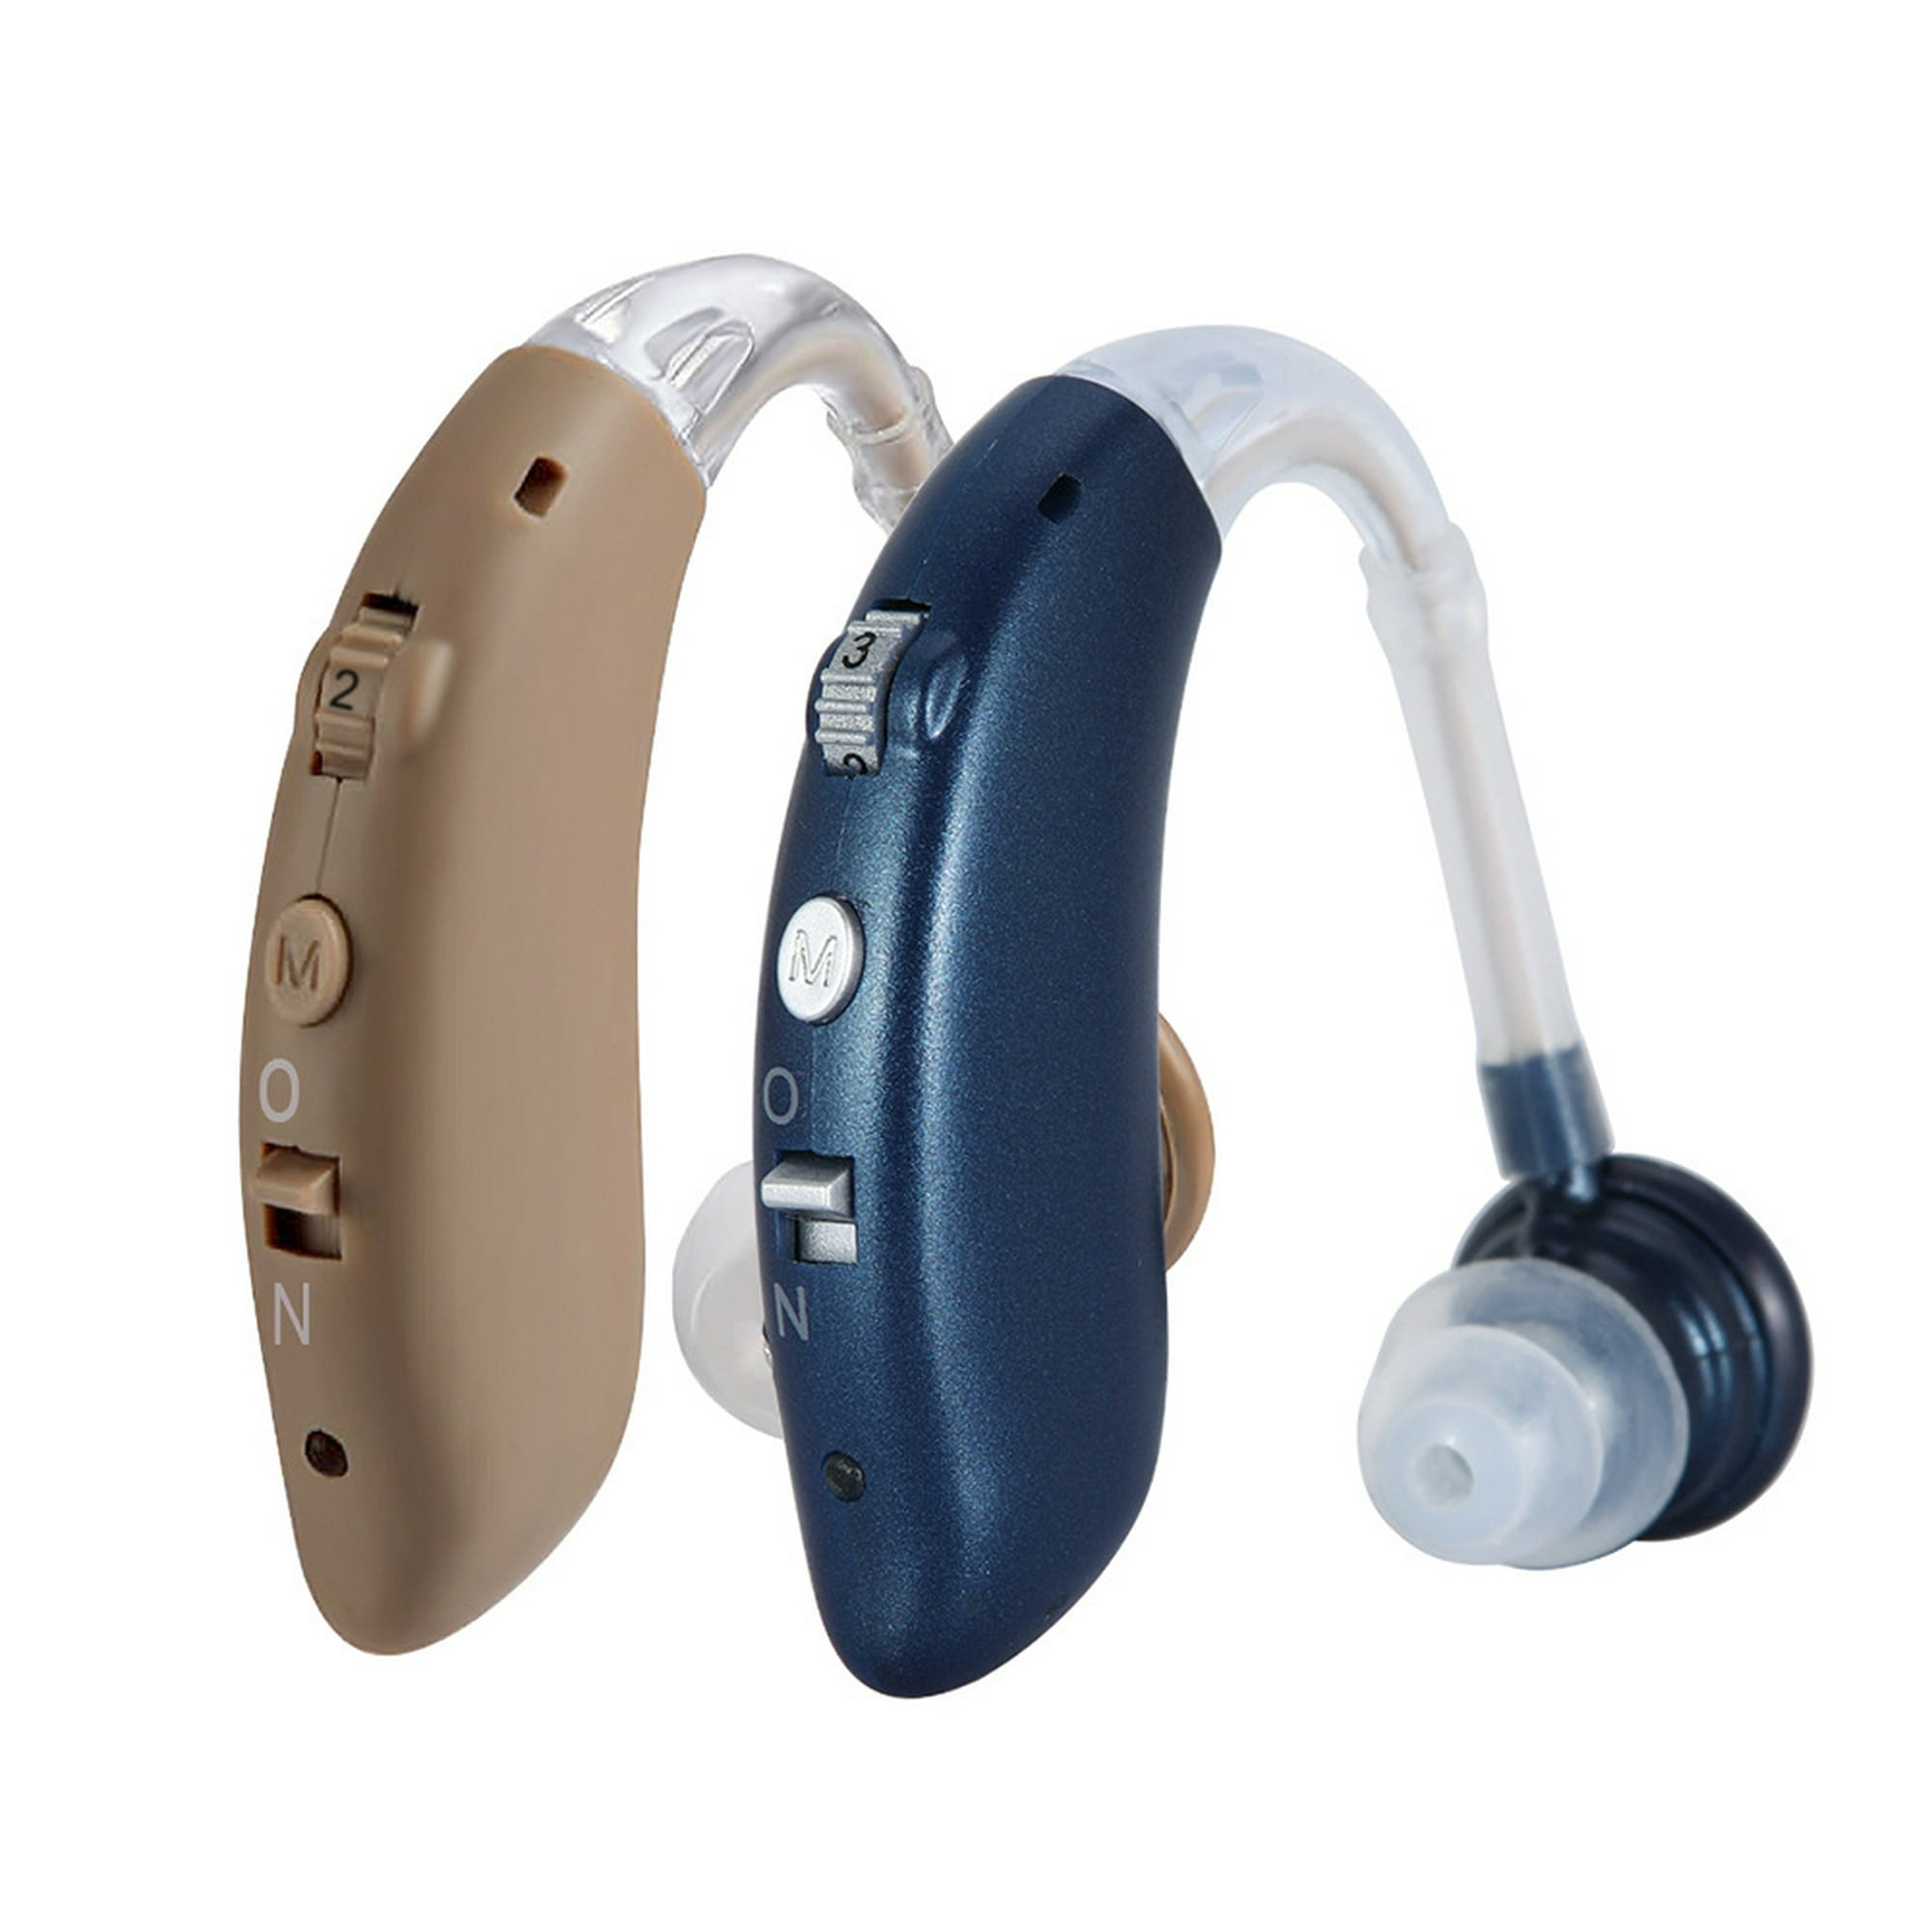  Audífonos para personas mayores con cancelación de ruido,  amplificador auditivo recargable para pérdida auditiva, audífono invisible  : Salud y Hogar